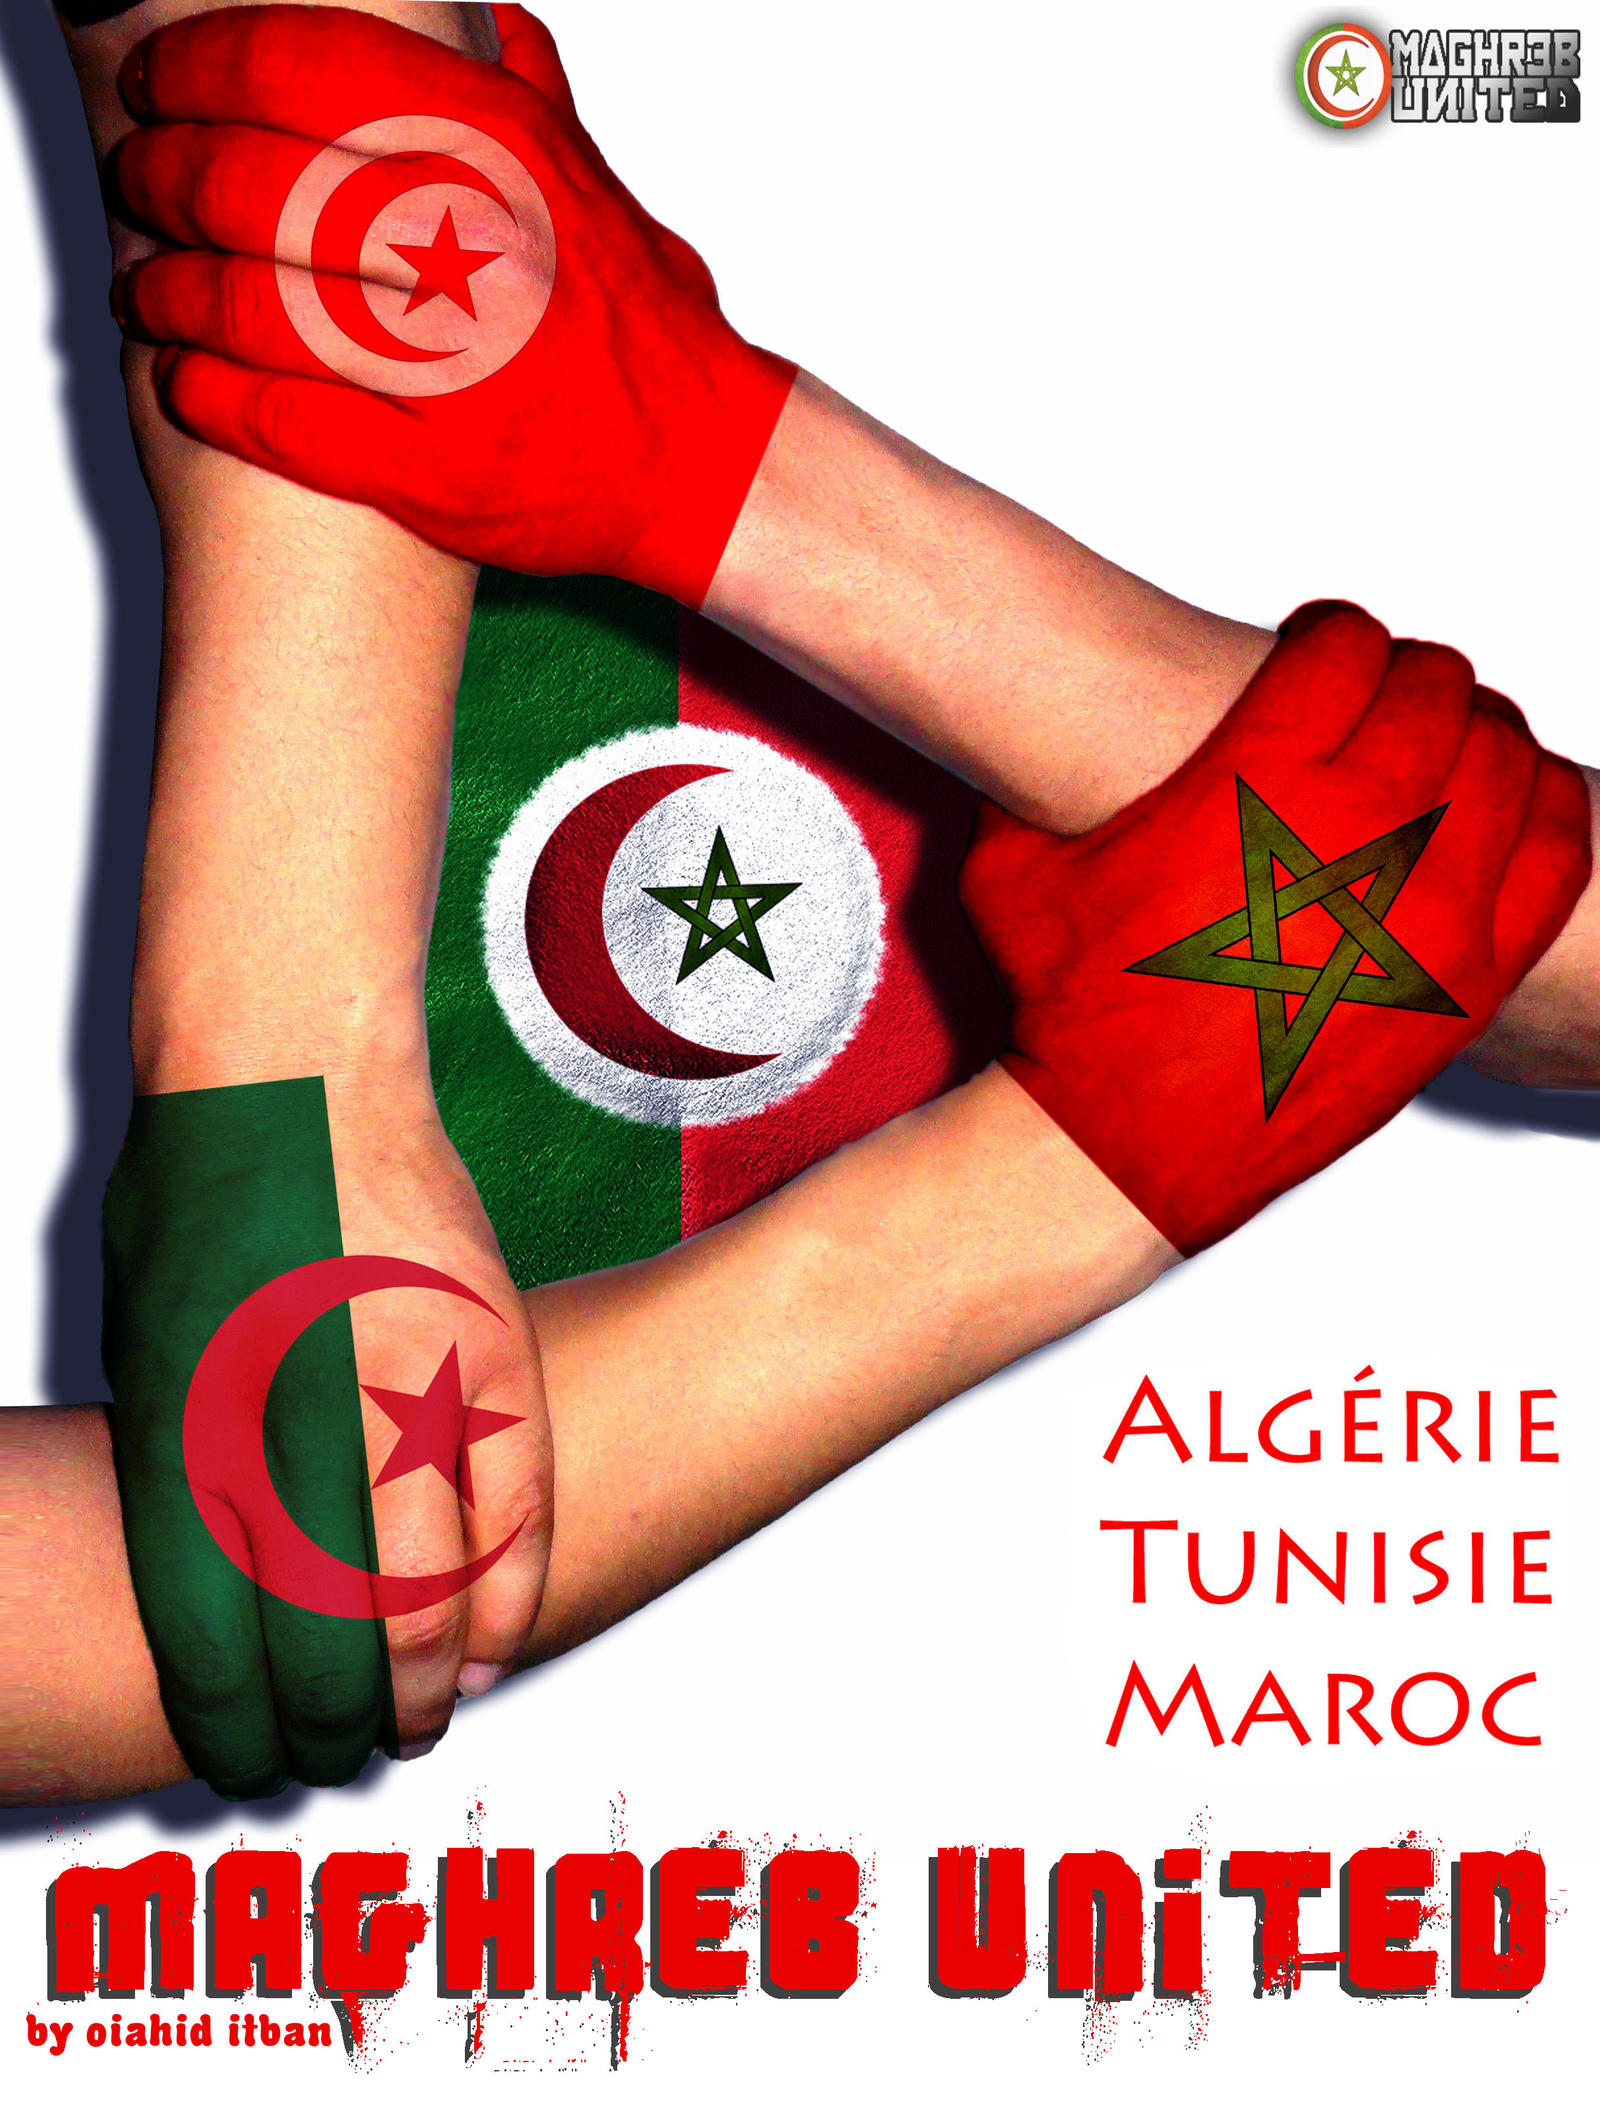 Algerie Tunisie Maroc By 01nabti01 On Deviantart